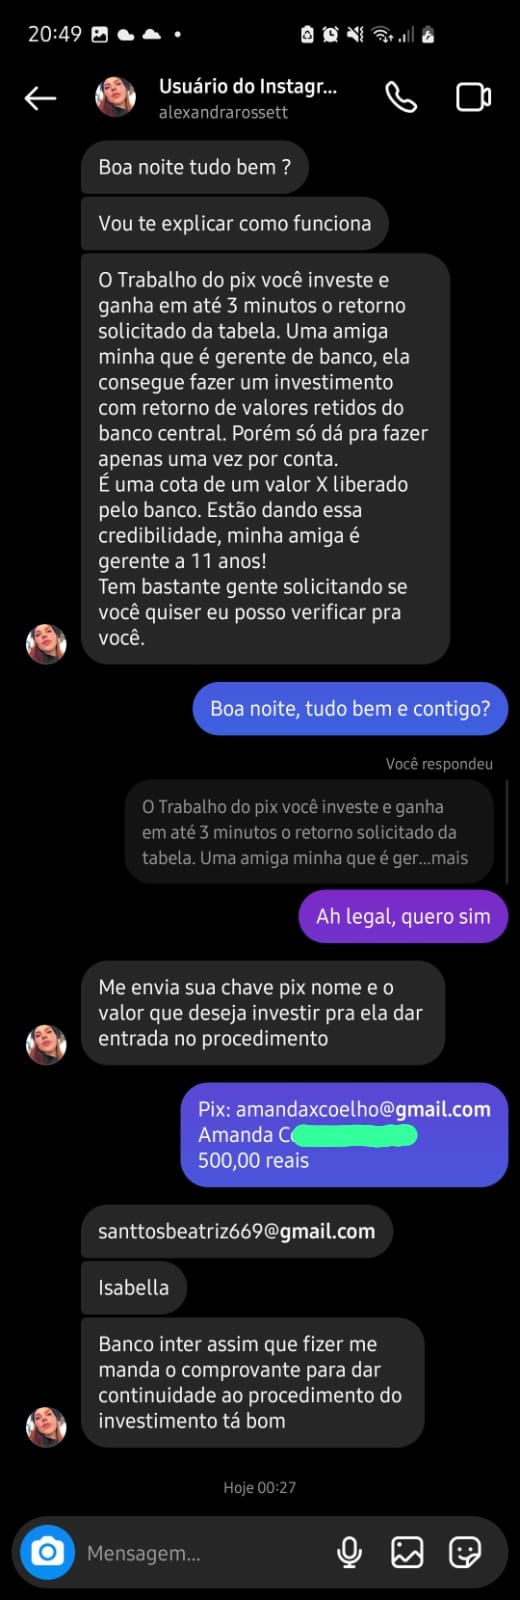 Vaquinha Online - Me ajude a recuperar o dinheiro que perdi com os golpistas